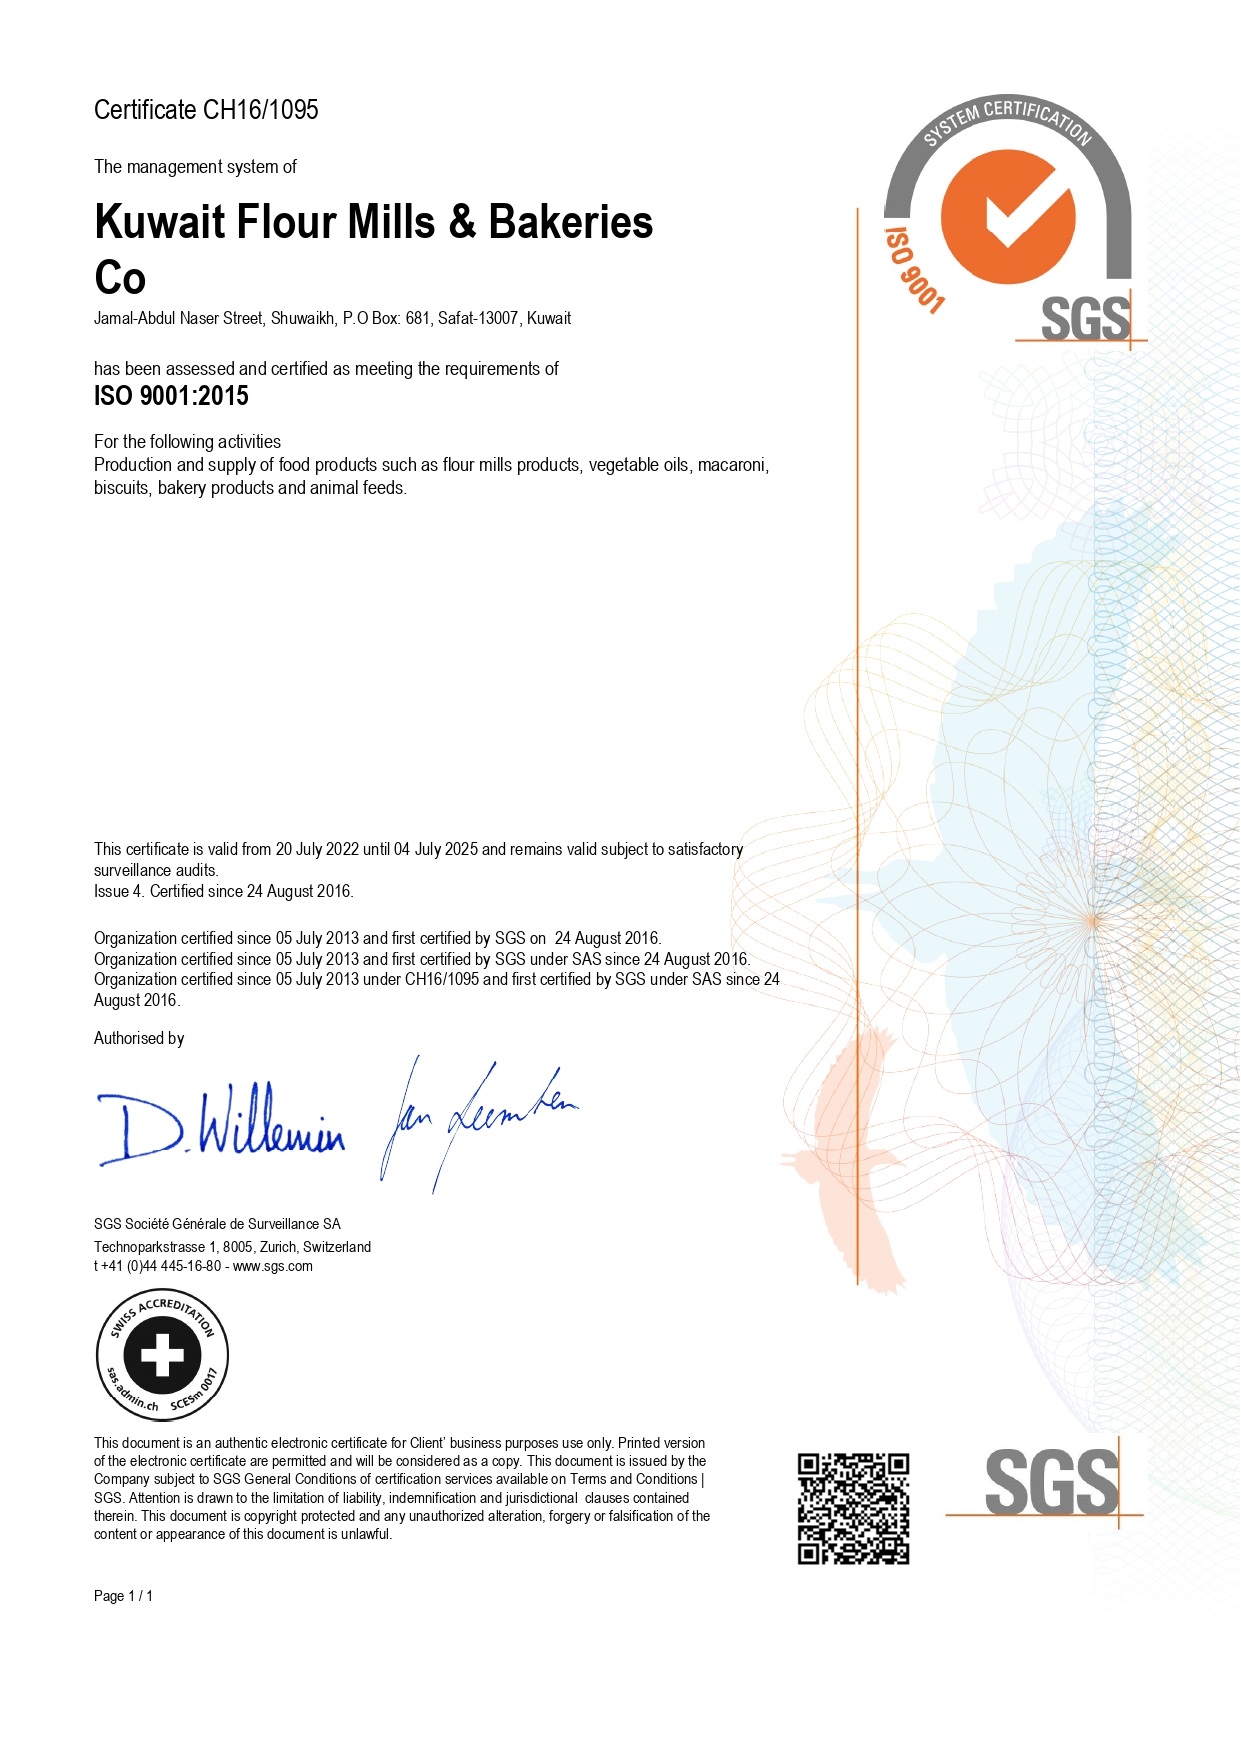 ISO 9001 - 2015 - valid till 2025